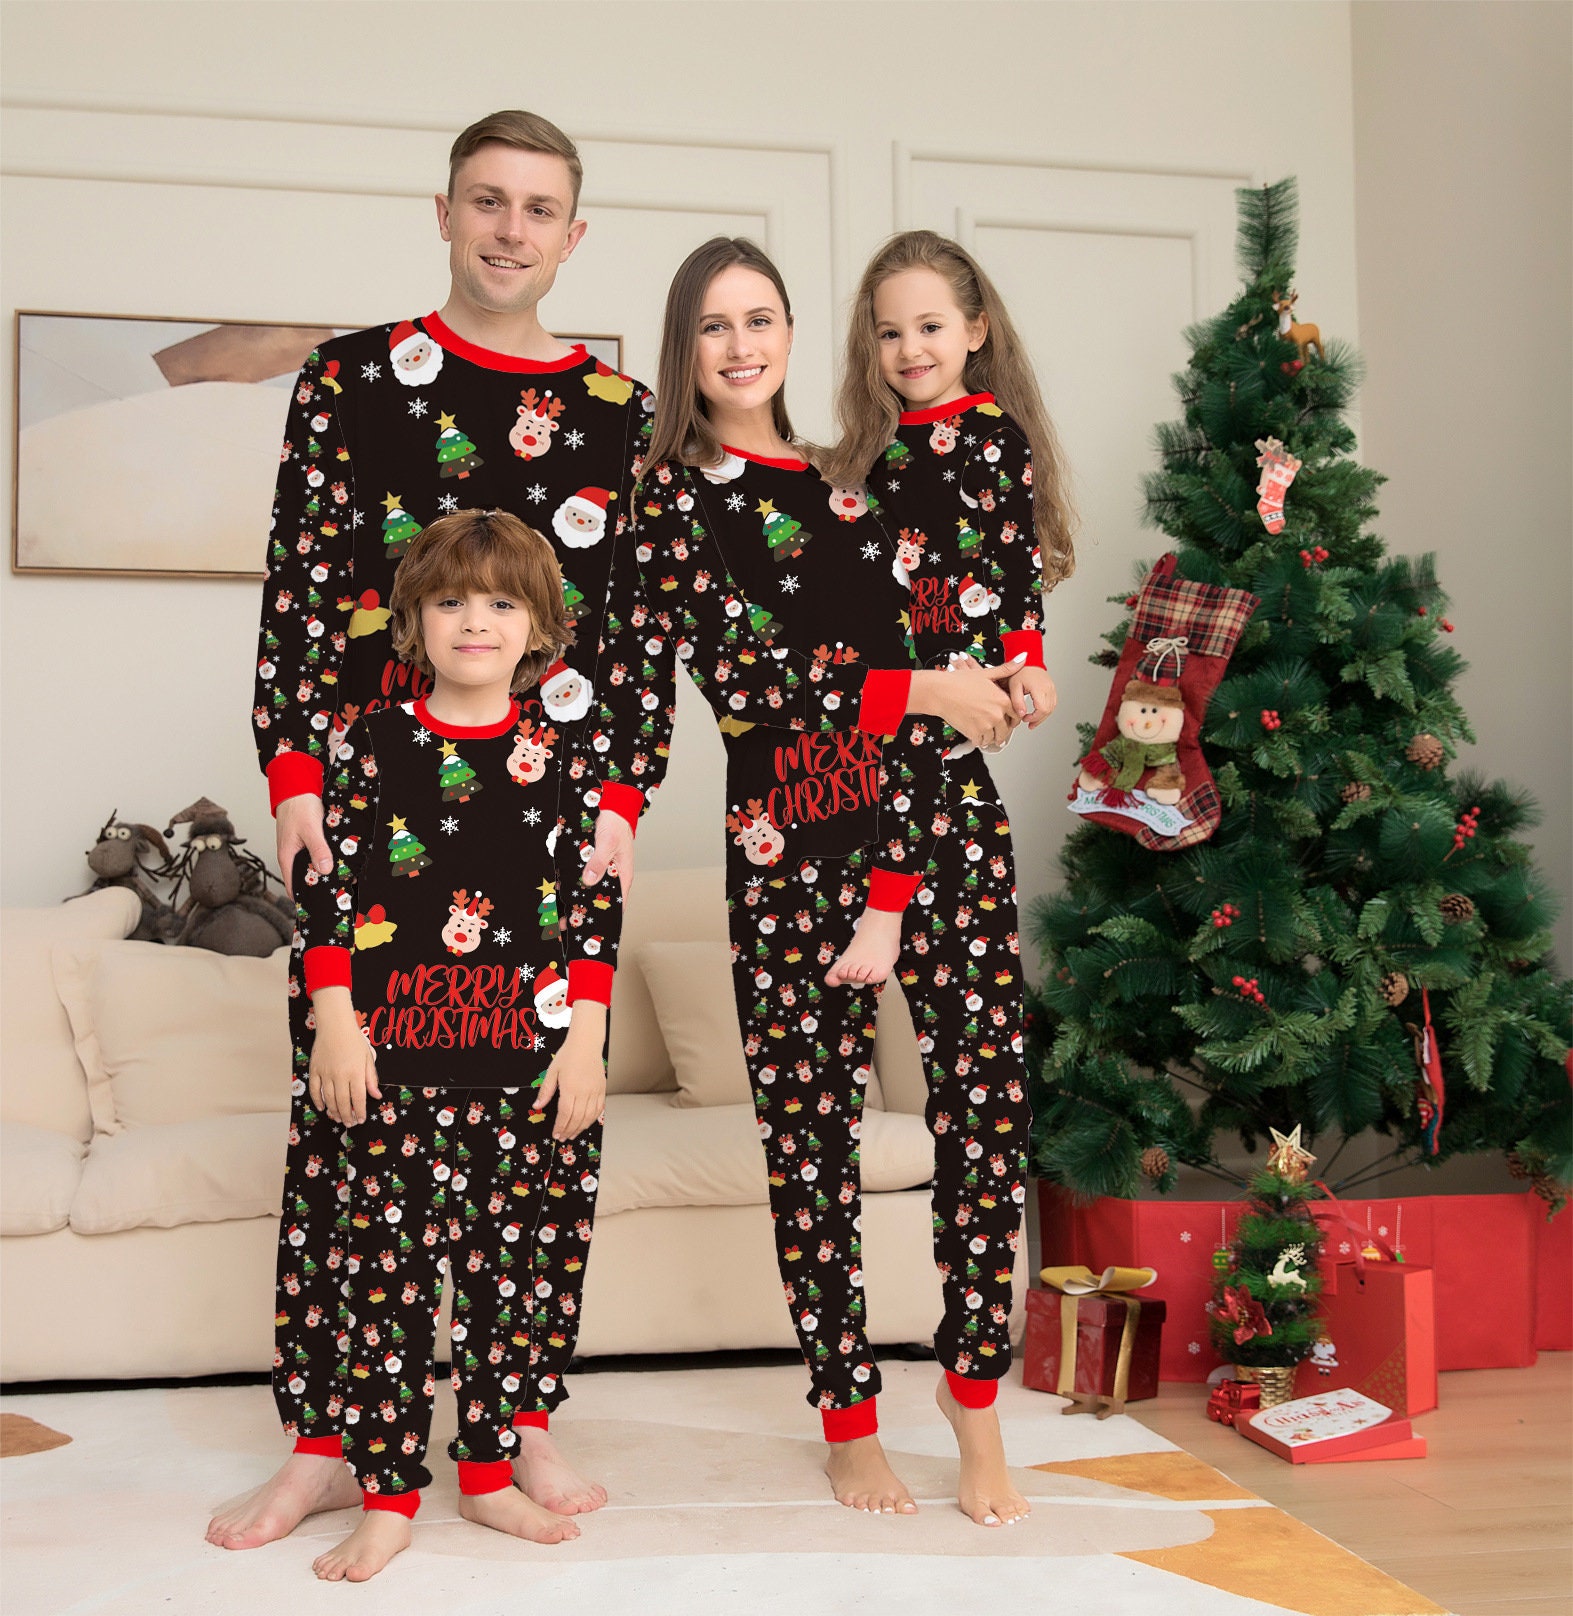 personalised Christmas pyjamas UK Girls Christmas Eve pjs Clothing Unisex Kids Clothing Pyjamas & Robes Pyjamas Girls Santa pjs children's Xmas pjs 